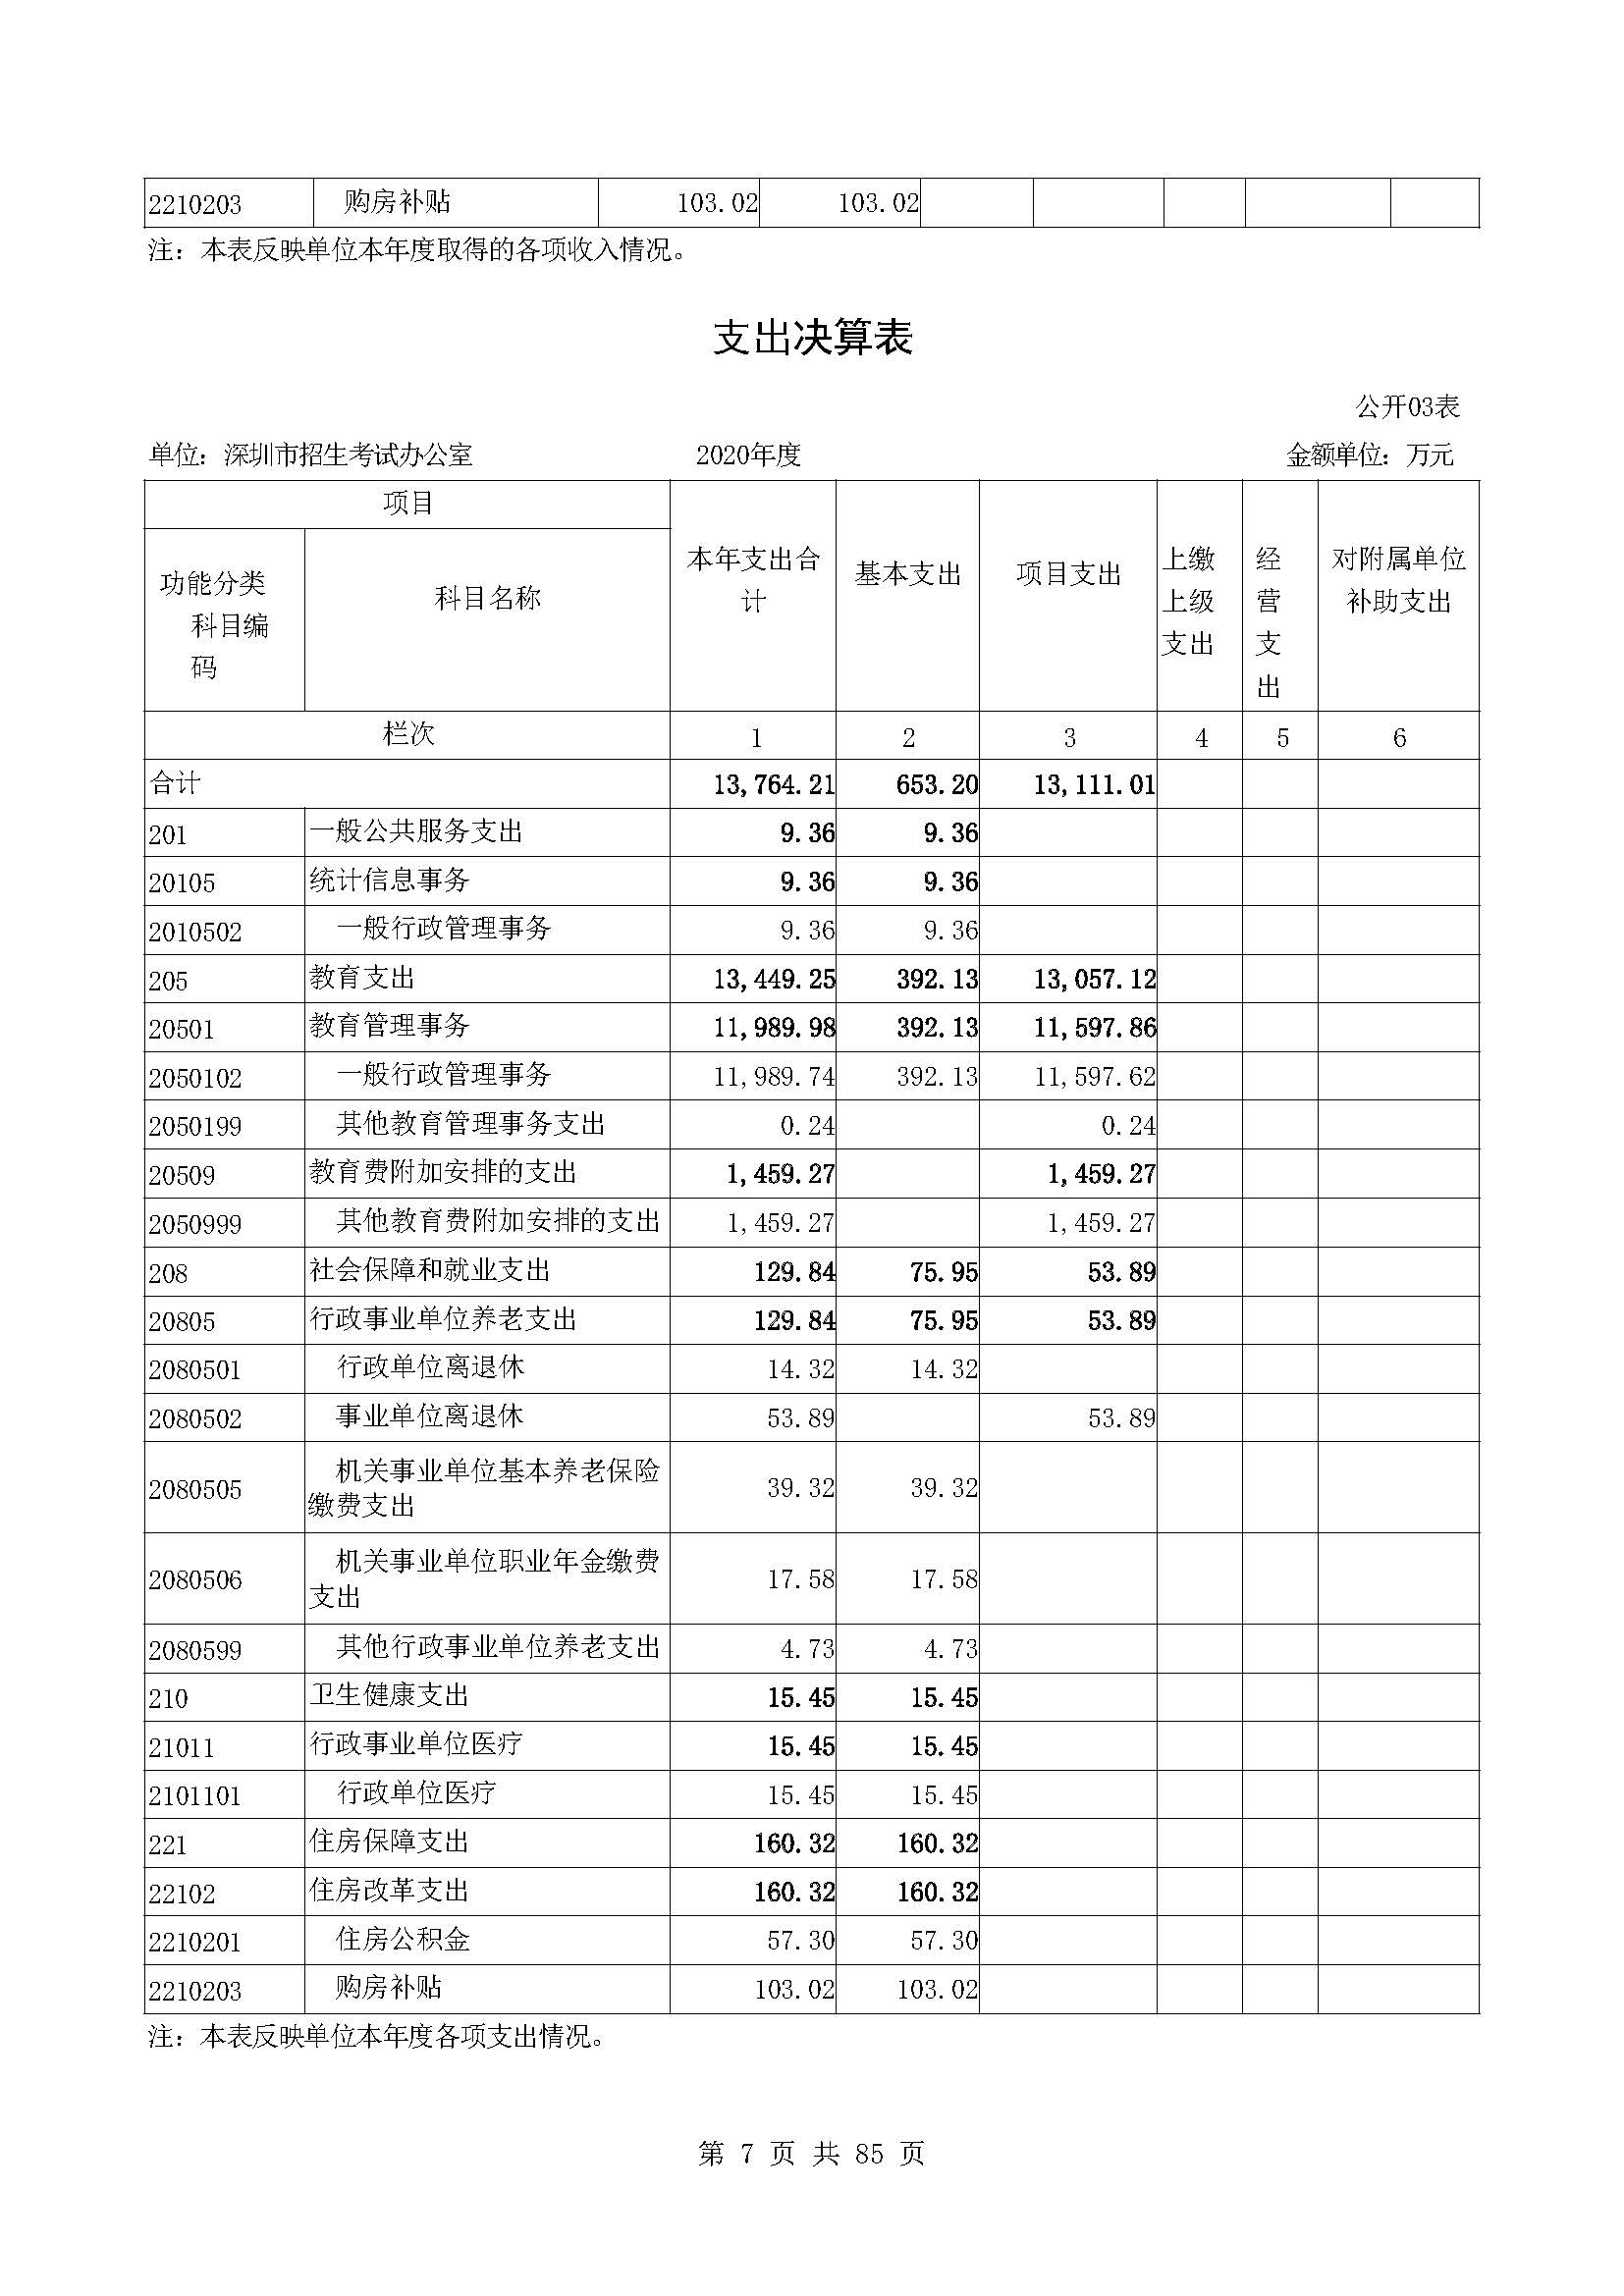 深圳市招生考试办公室2020年度部门决算_页面_08.jpg